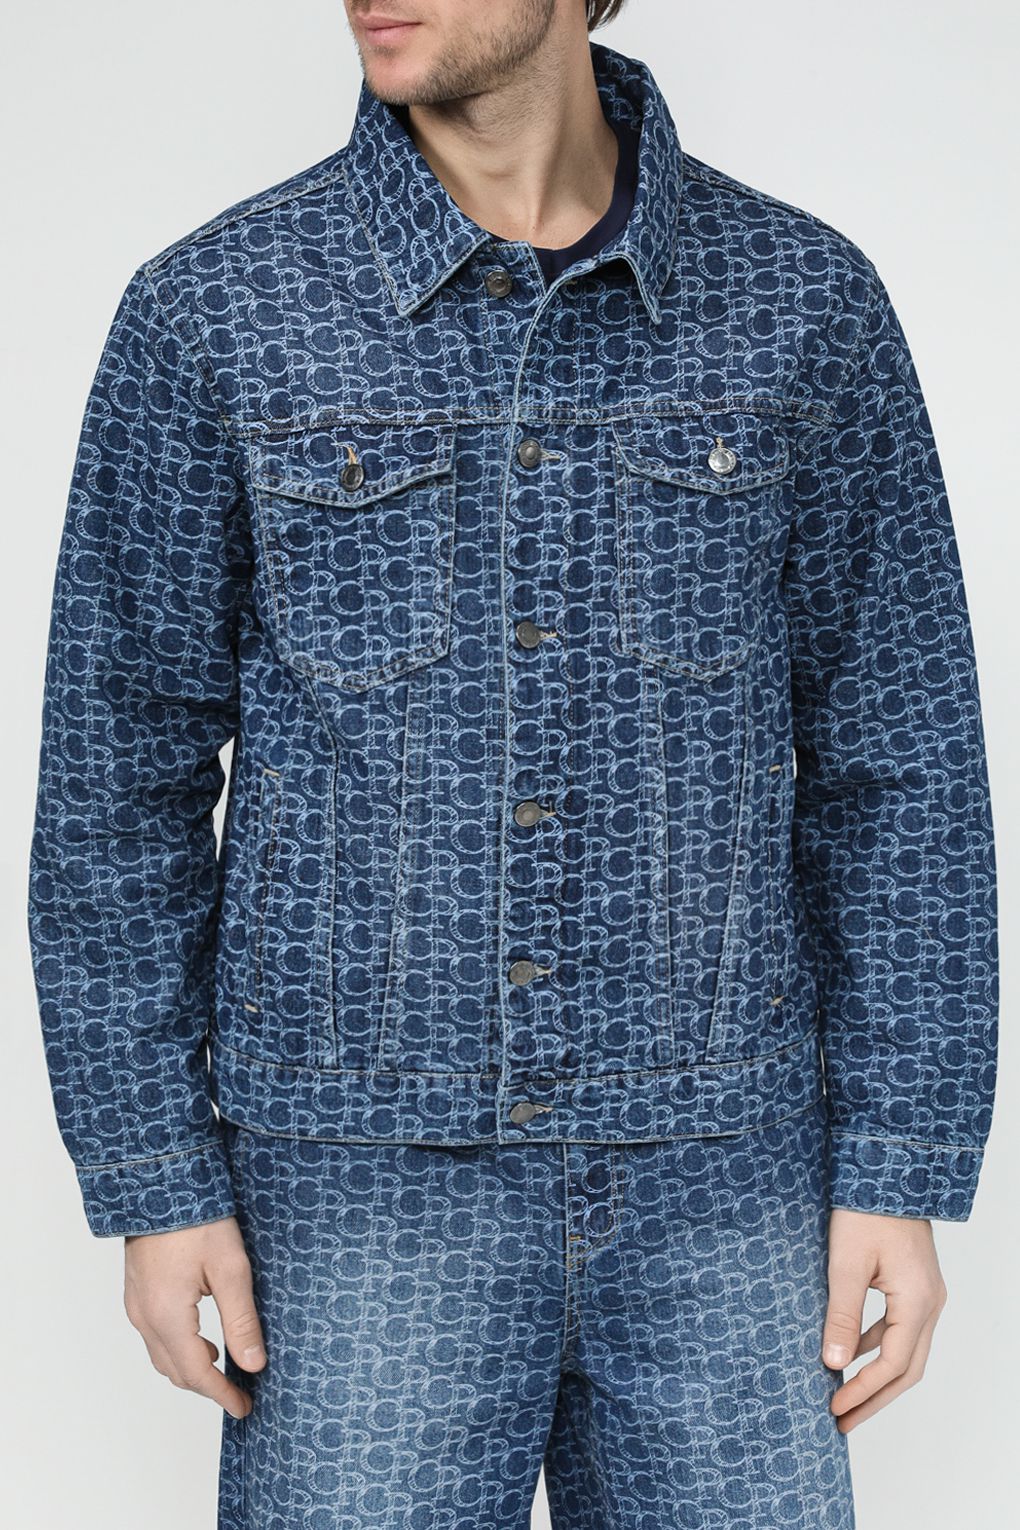 Джинсовая куртка мужская COLORPLAY CP24029348-105 синяя 48 RU